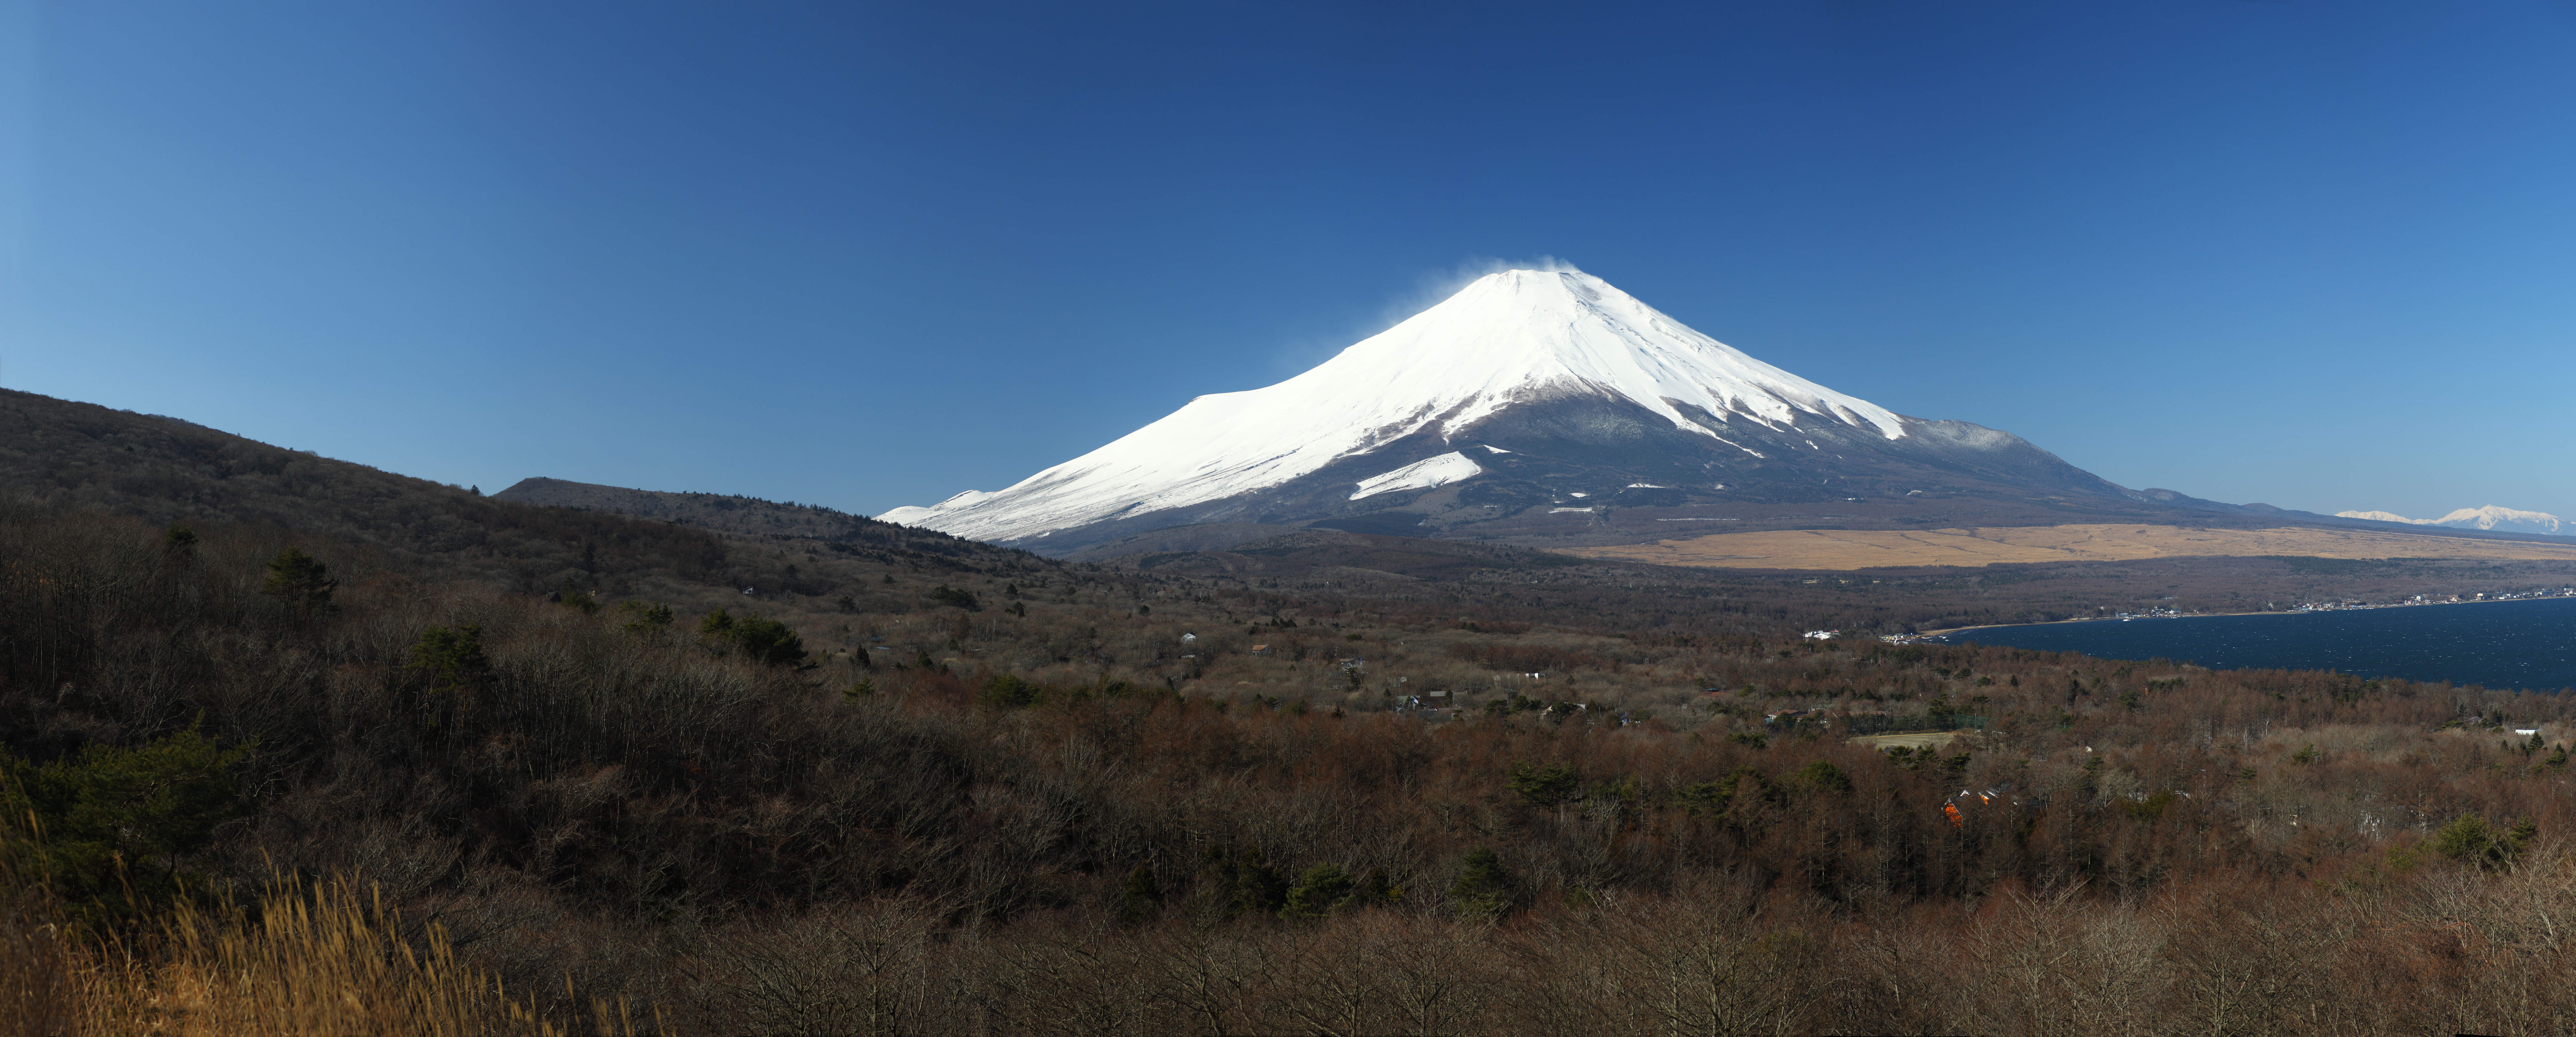 Foto, materieel, vrij, landschap, schilderstuk, bevoorraden foto,Mt. Fuji, Mt. Fuji, Yamanakako, , 